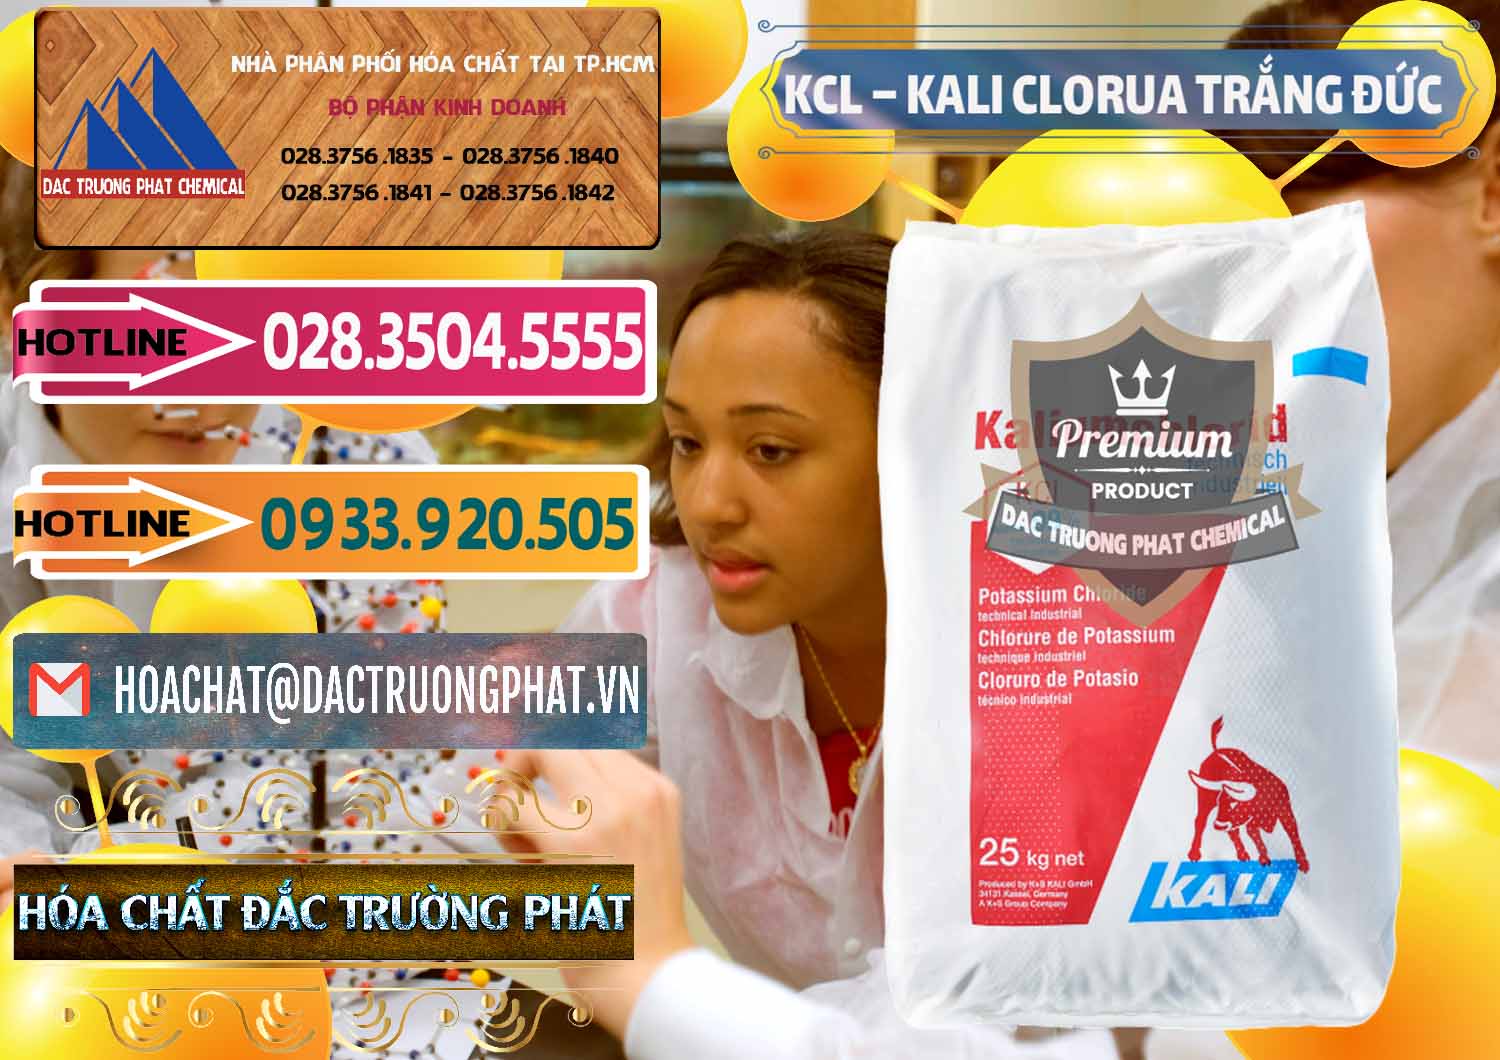 Nơi chuyên bán và cung ứng KCL – Kali Clorua Trắng Đức Germany - 0086 - Phân phối ( bán ) hóa chất tại TP.HCM - dactruongphat.vn